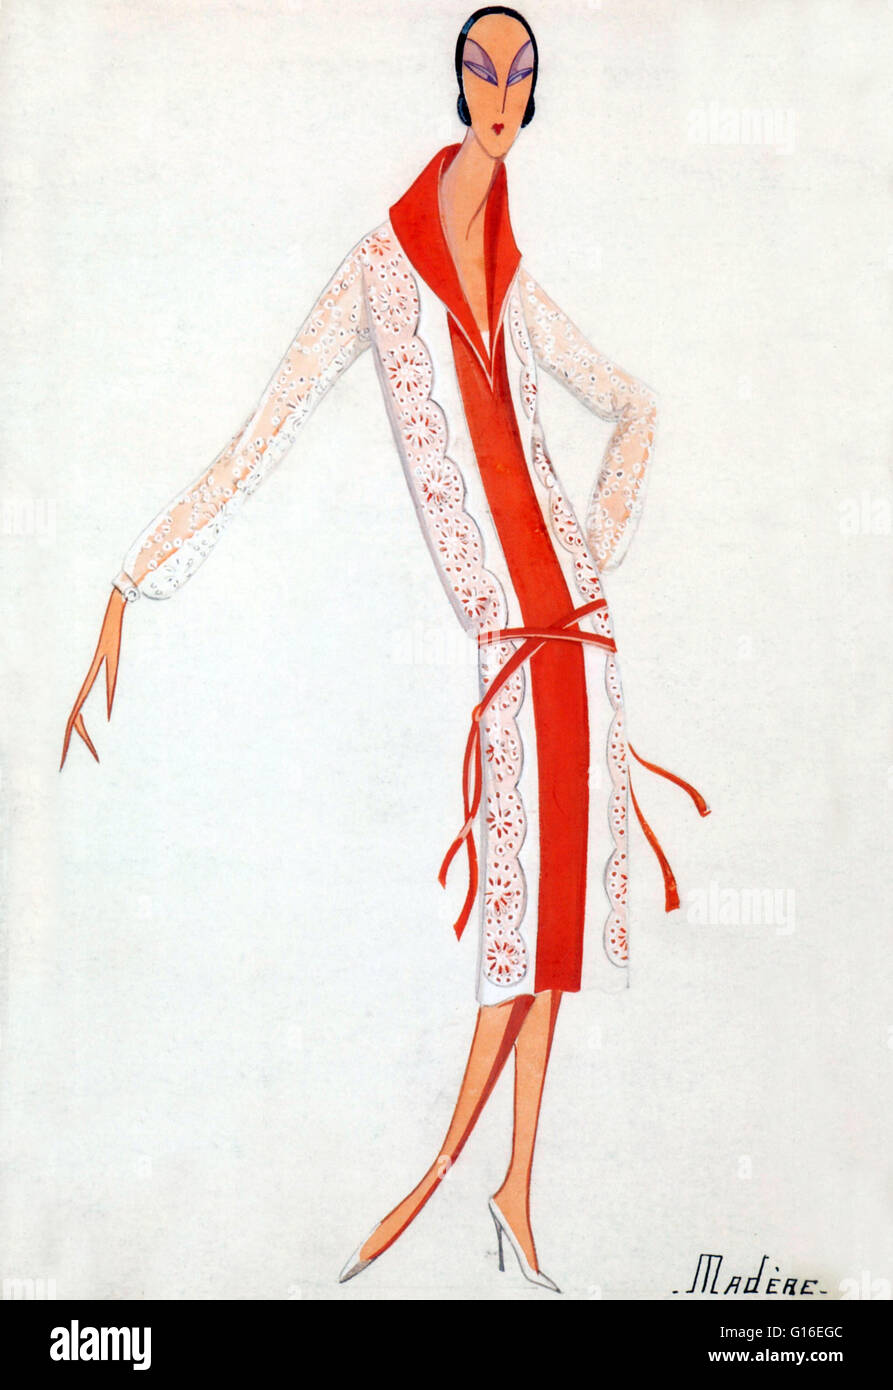 Jeanne-Marie Lanvin (Gennaio 1, 1867 - luglio 6, 1946) era un francese di  designer di moda. Ha fondato la Lanvin fashion house e la società di  profumo Lanvin Parfums. Nel 1909, Lanvin